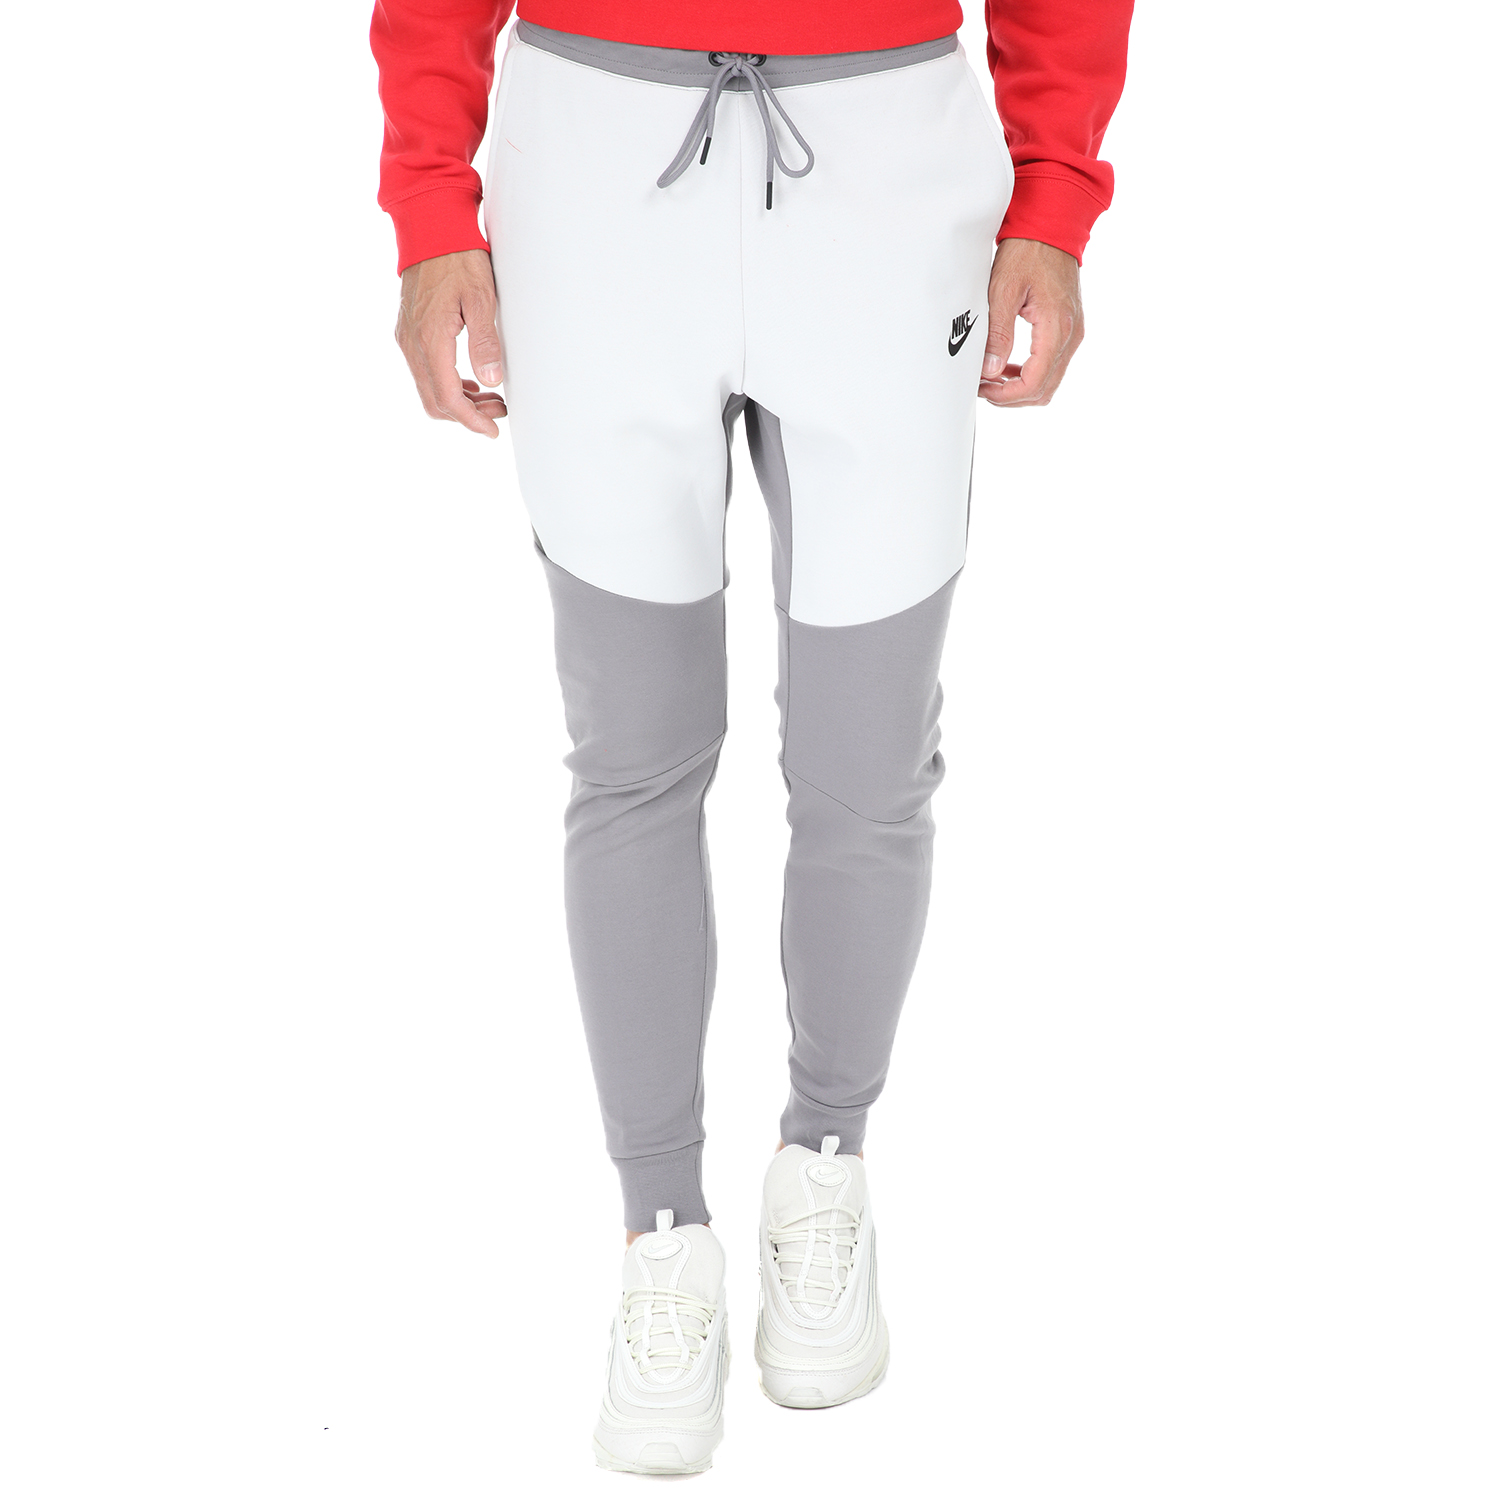 NIKE - Ανδρικό παντελόνι φόρμας Nike NSW TCH FLC JGGR γκρί-άσπρο Ανδρικά/Ρούχα/Αθλητικά/Φόρμες